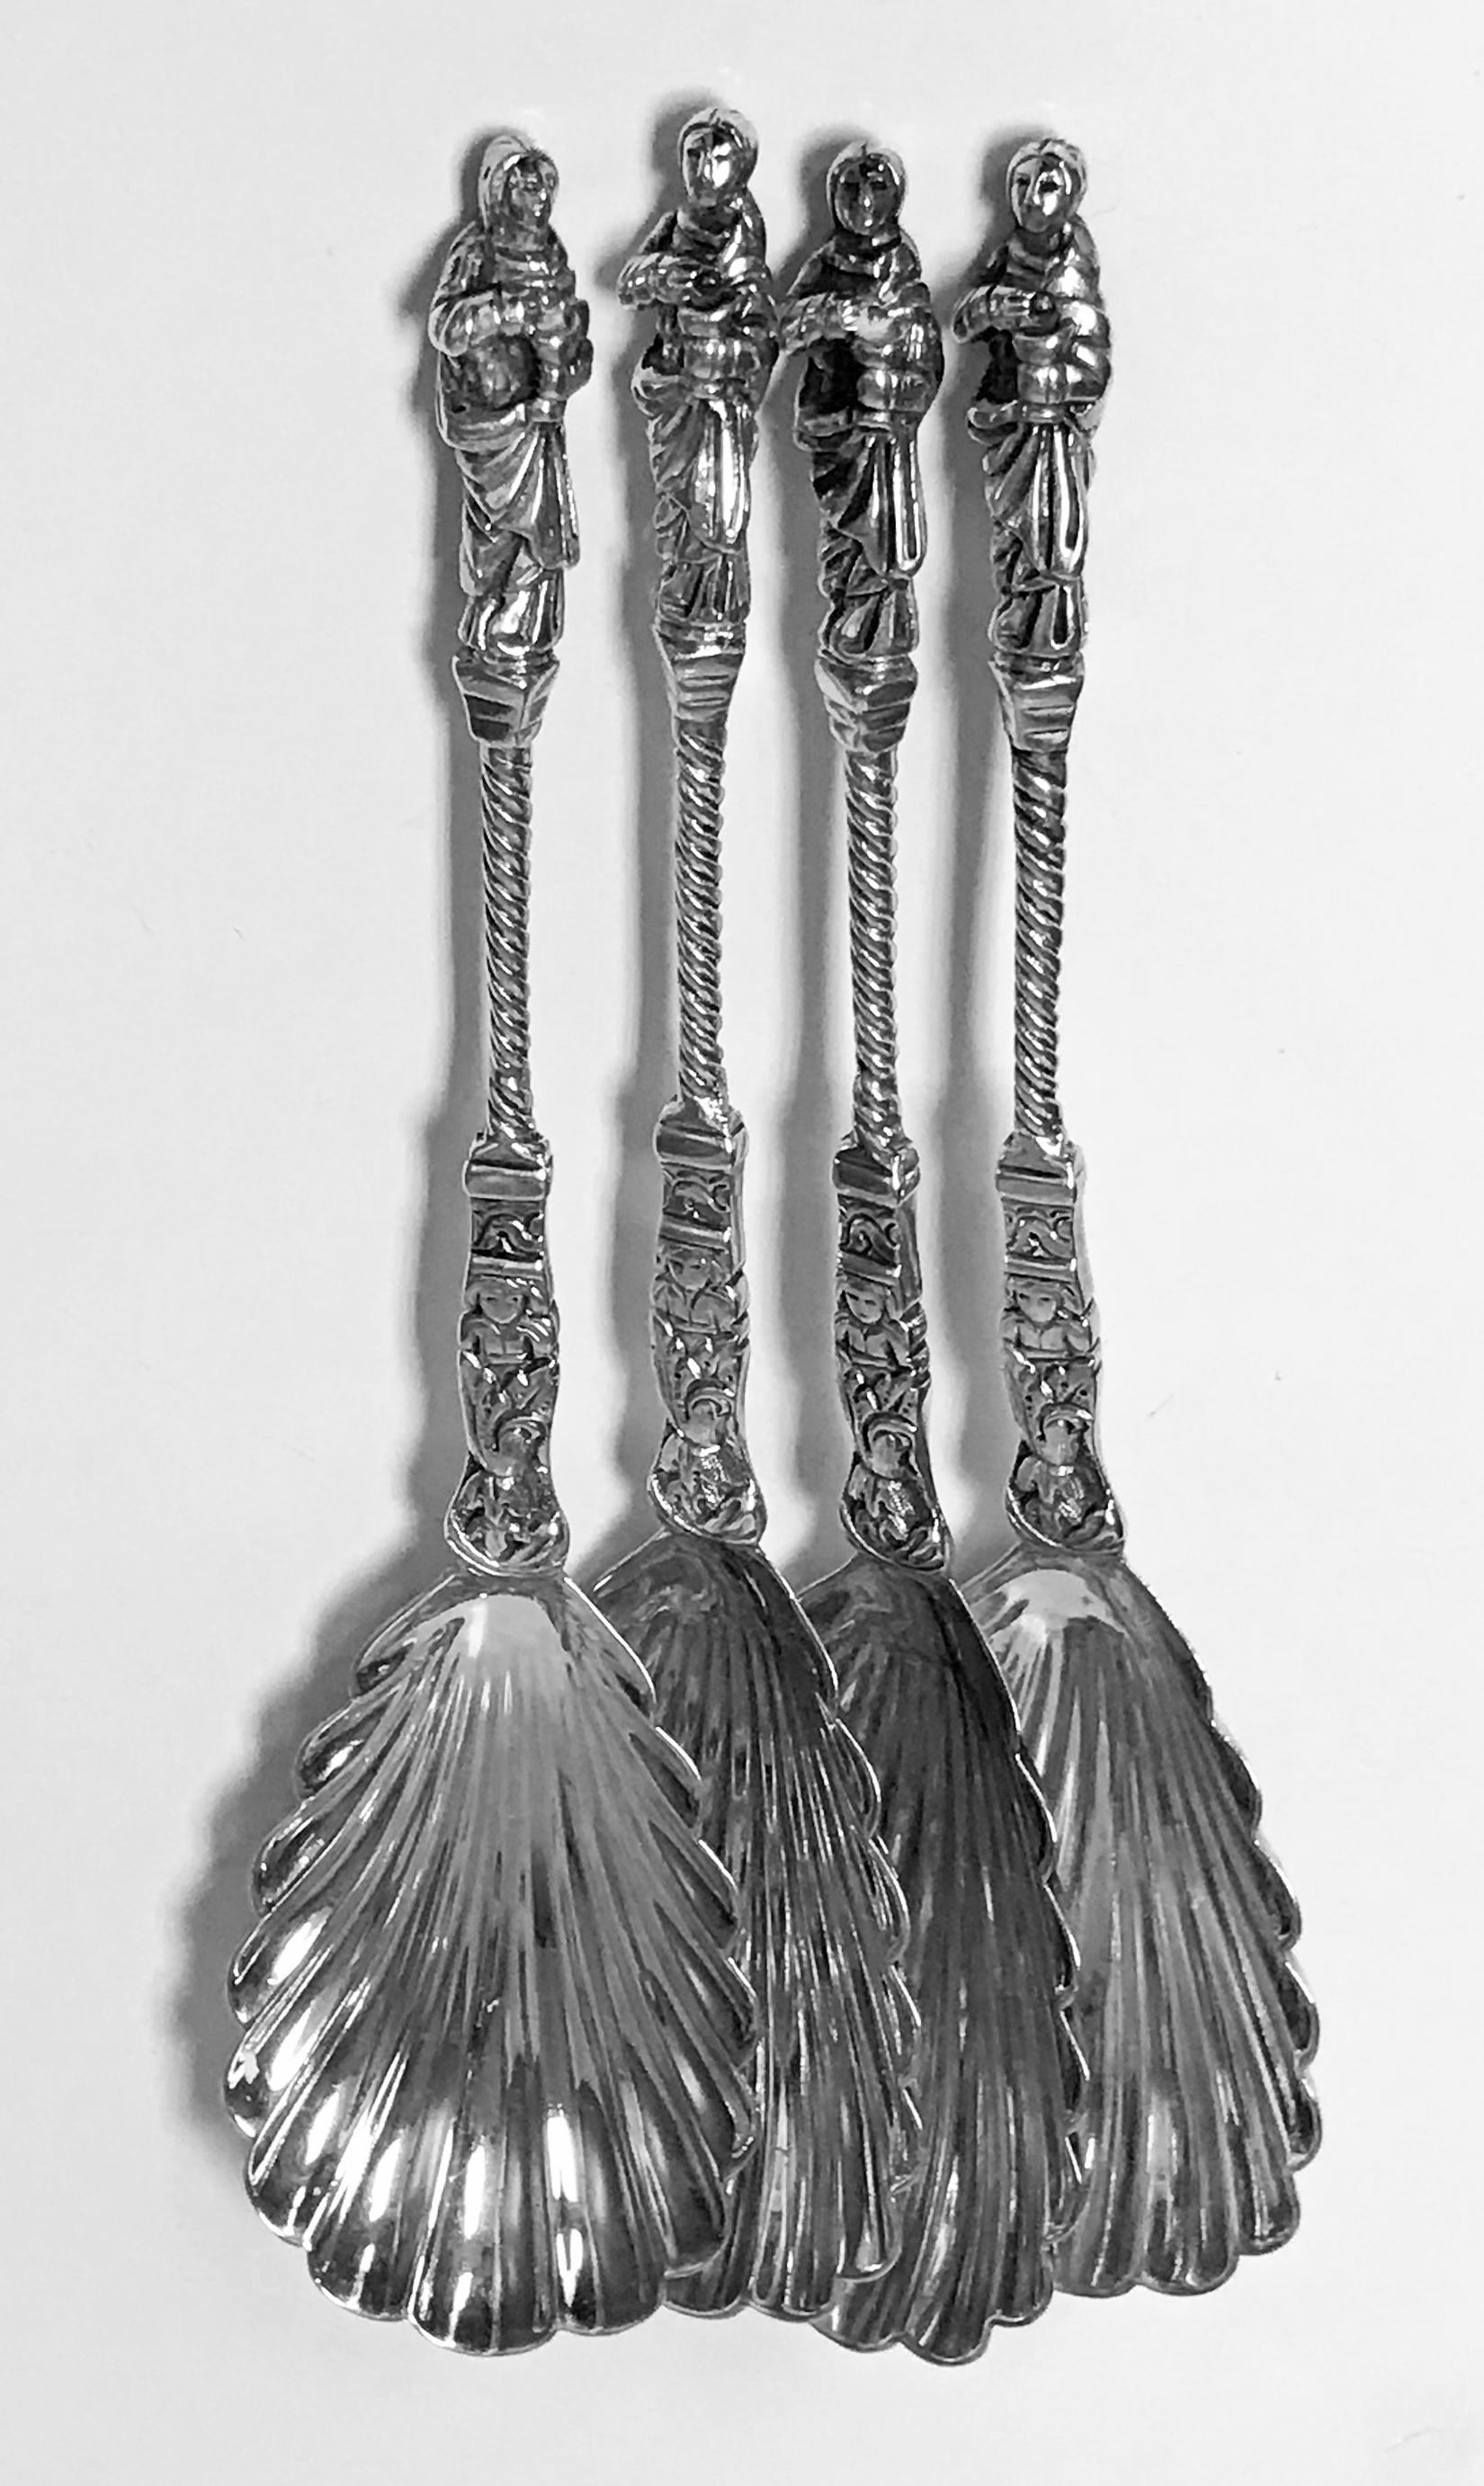 English Set of Four Antique Silver Apostle Spoons Edward Hutton London, 1888